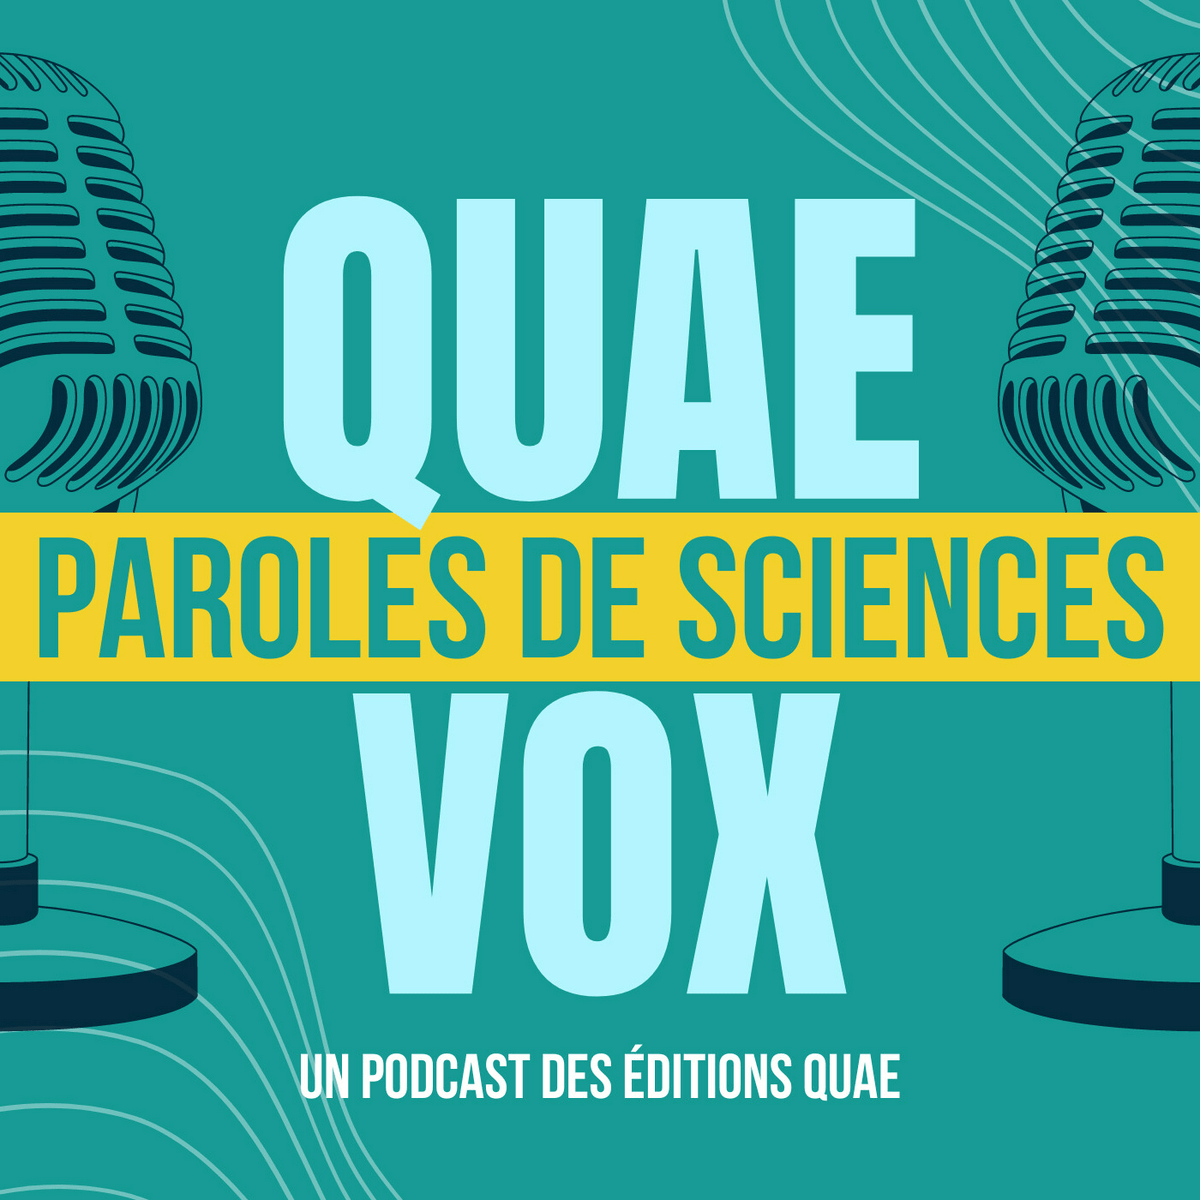 Les éditions Quæ lancent "Quae Vox: Paroles de Sciences", une série de podcasts sur la culture scientifique